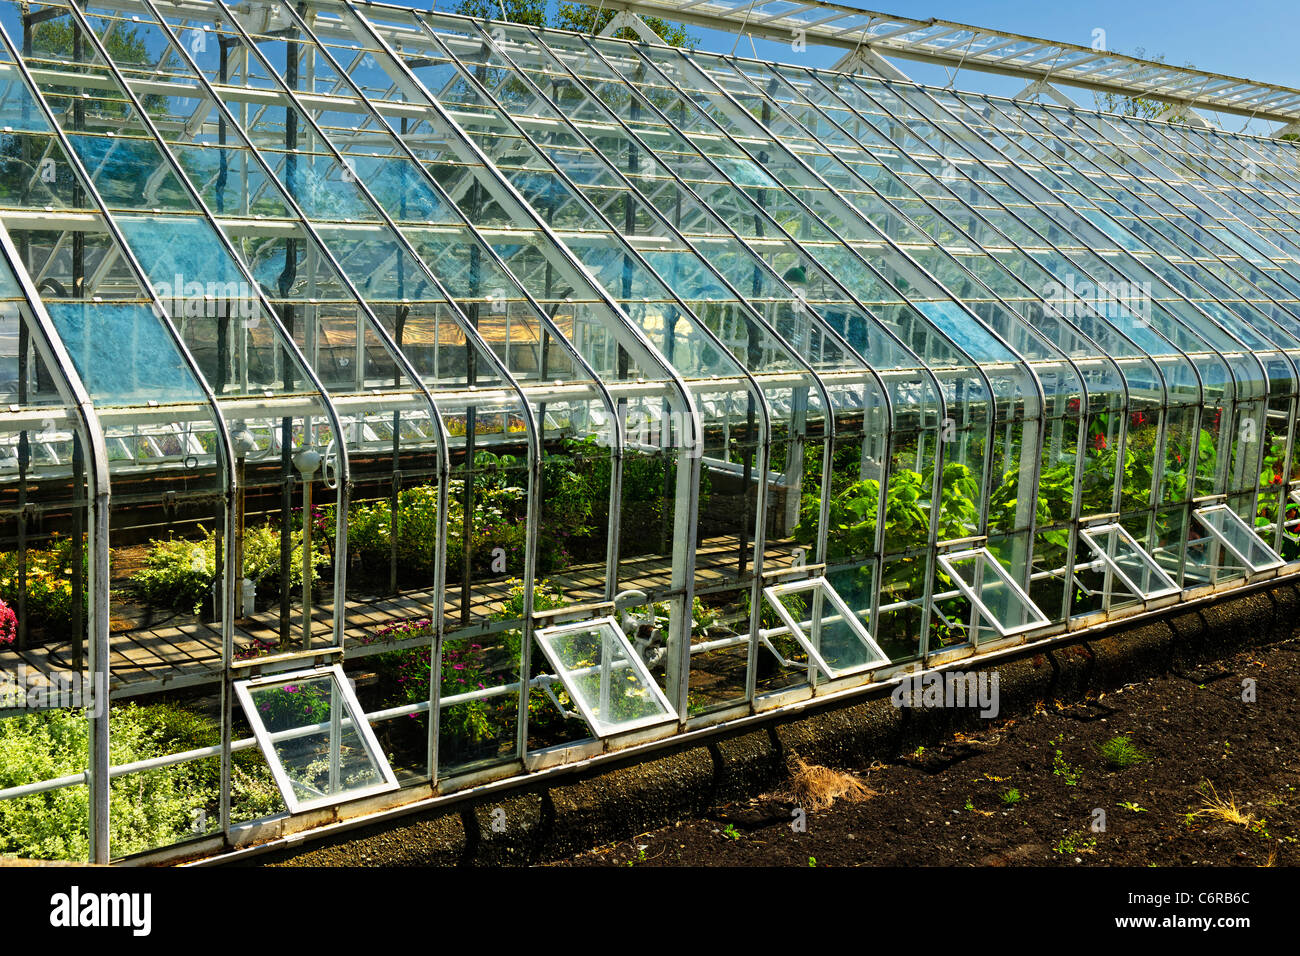 Glas Gewächshaus oder Treibhaus Pflanzen Stockfotografie - Alamy